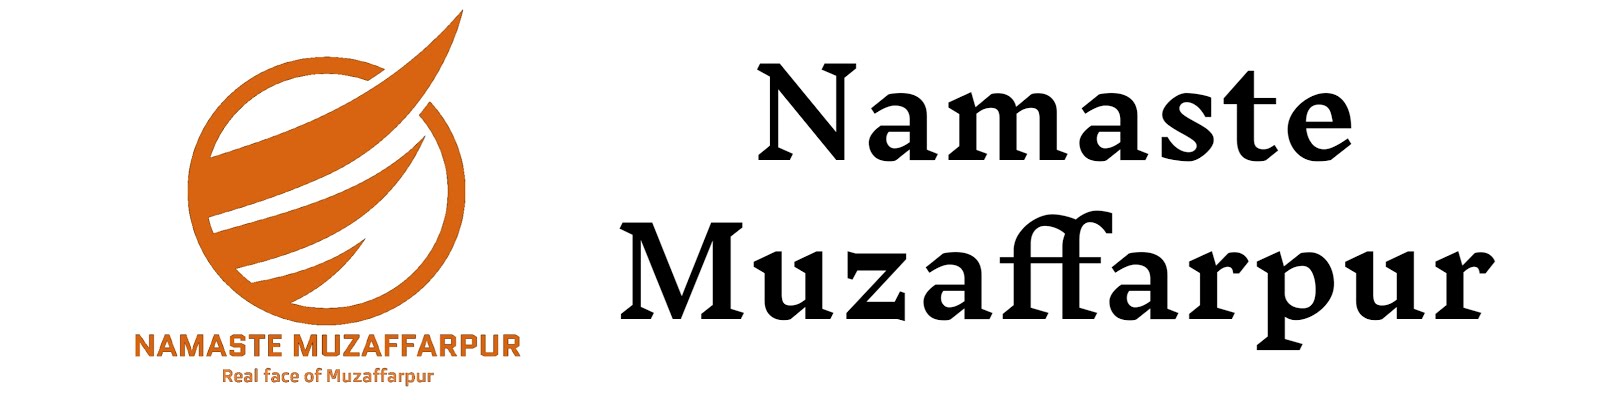 Namaste Muzaffarpur - The Real Face of Muzaffarpur